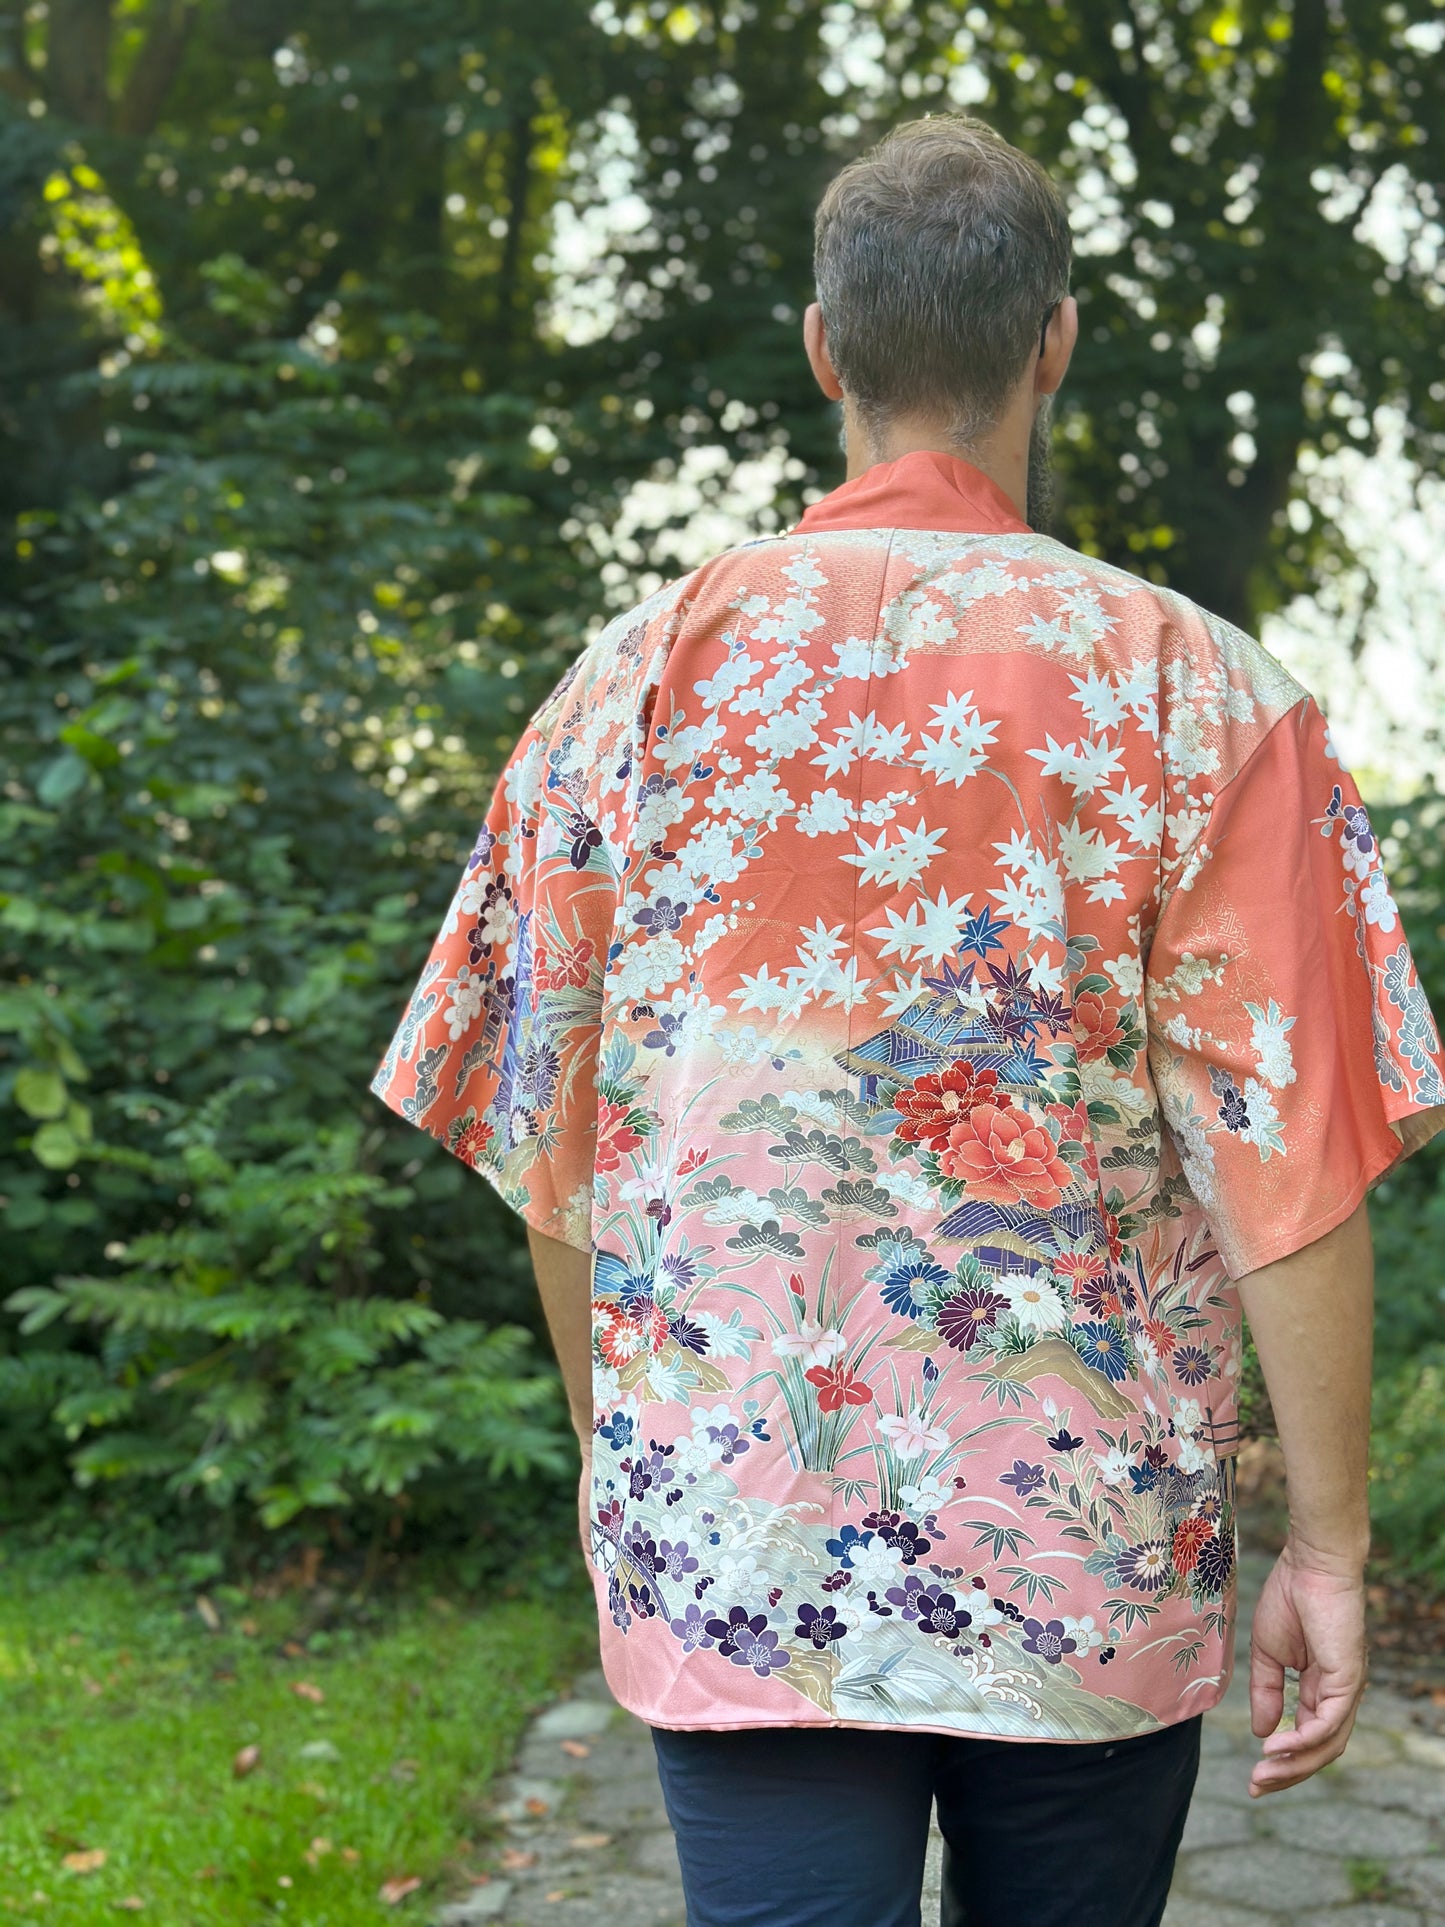 【Pinkorange, die volle Blumenblüte】 Happi Jacke ＜ ausgezeichnet ・ Seide ＞ Für Männer, für Frauen, japanische Kimono, Japan Unisexesische Kleidung, Unisex, japanische Geschenke, originelle Designs